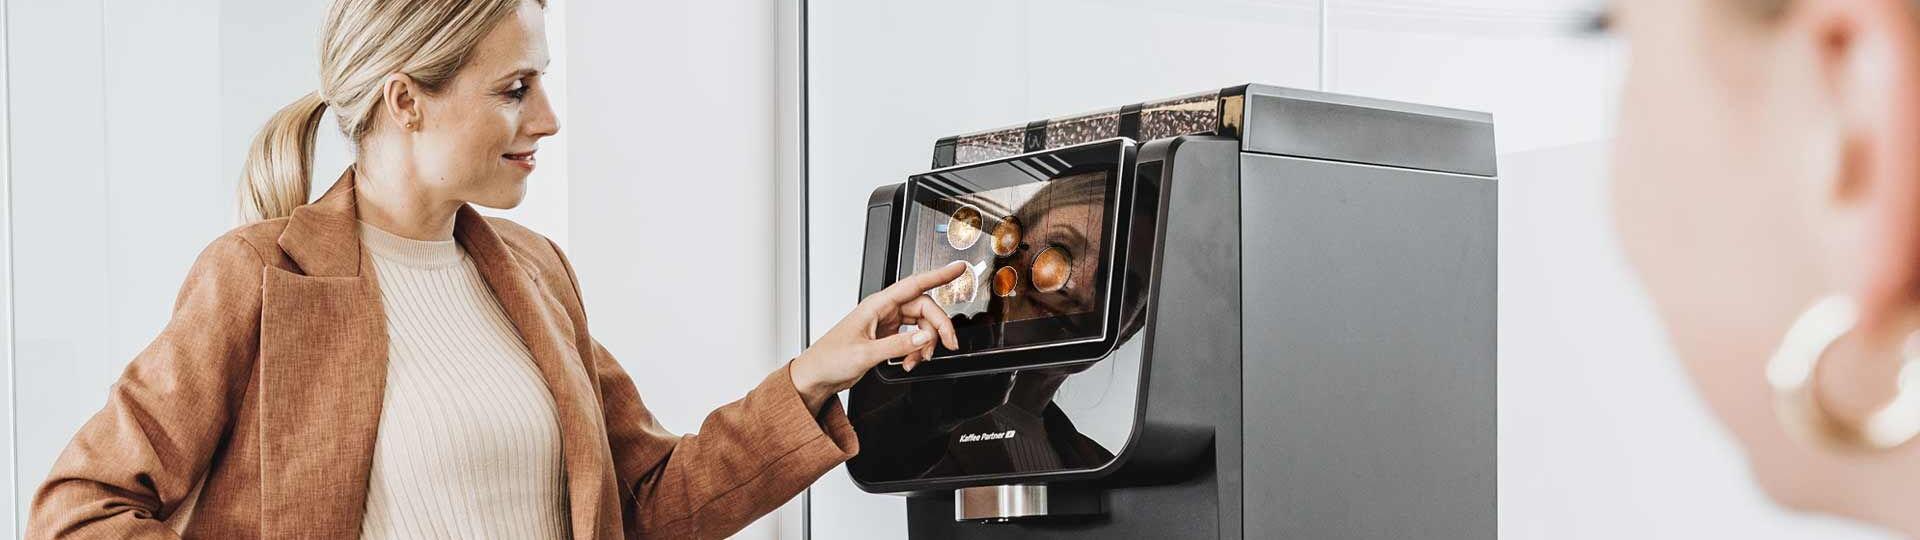 Eine Frau in eleganter Bürokleidung bedient einen Kaffeevollautomaten von Kaffee Partner im Büro. Eine weitere Frau ist im Vordergrund leicht unscharf zu sehen.